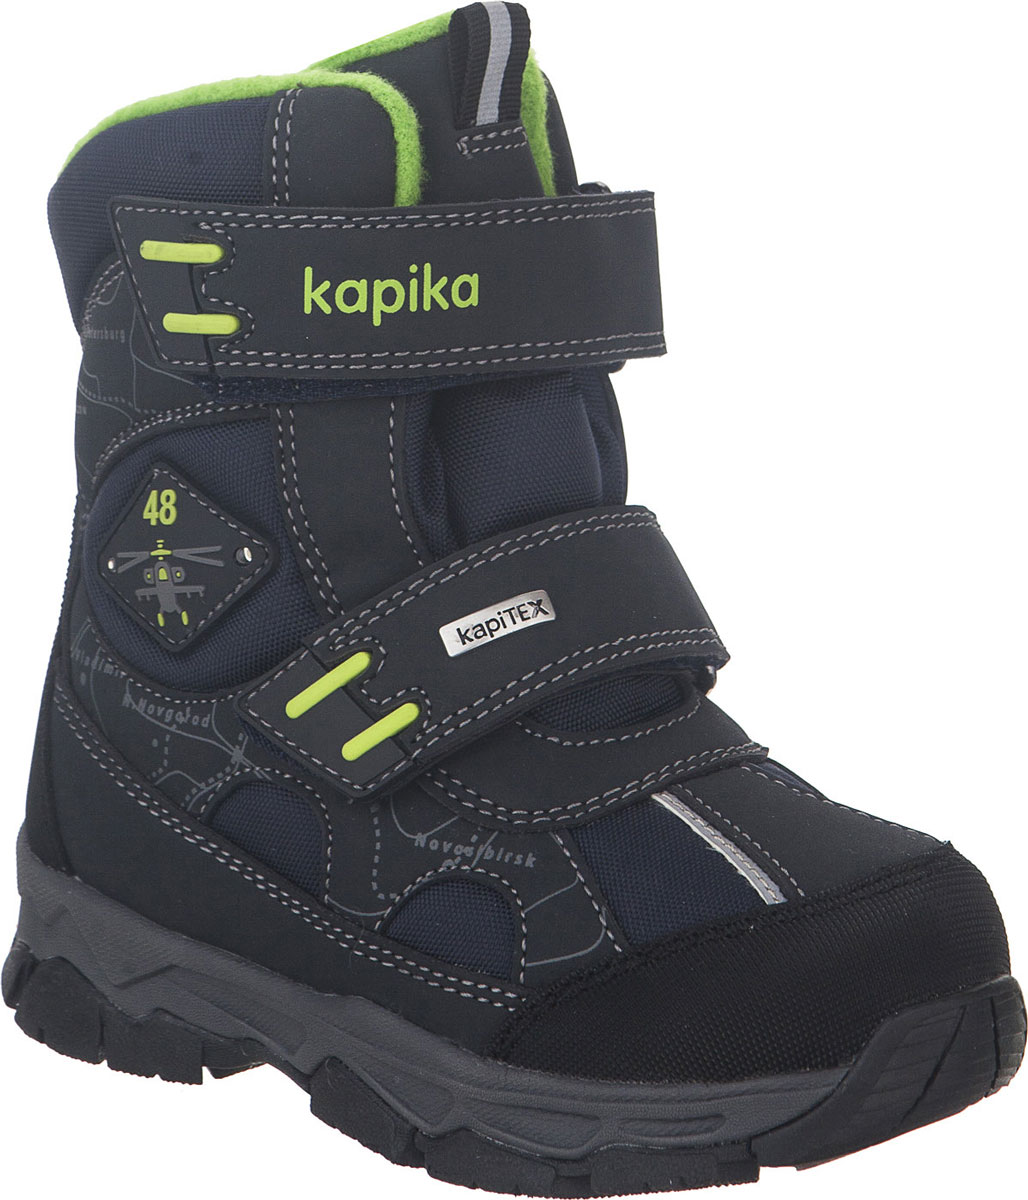 Ботинки для мальчика Kapika, цвет: темно-синий, салатовый. 42229-1. Размер 29